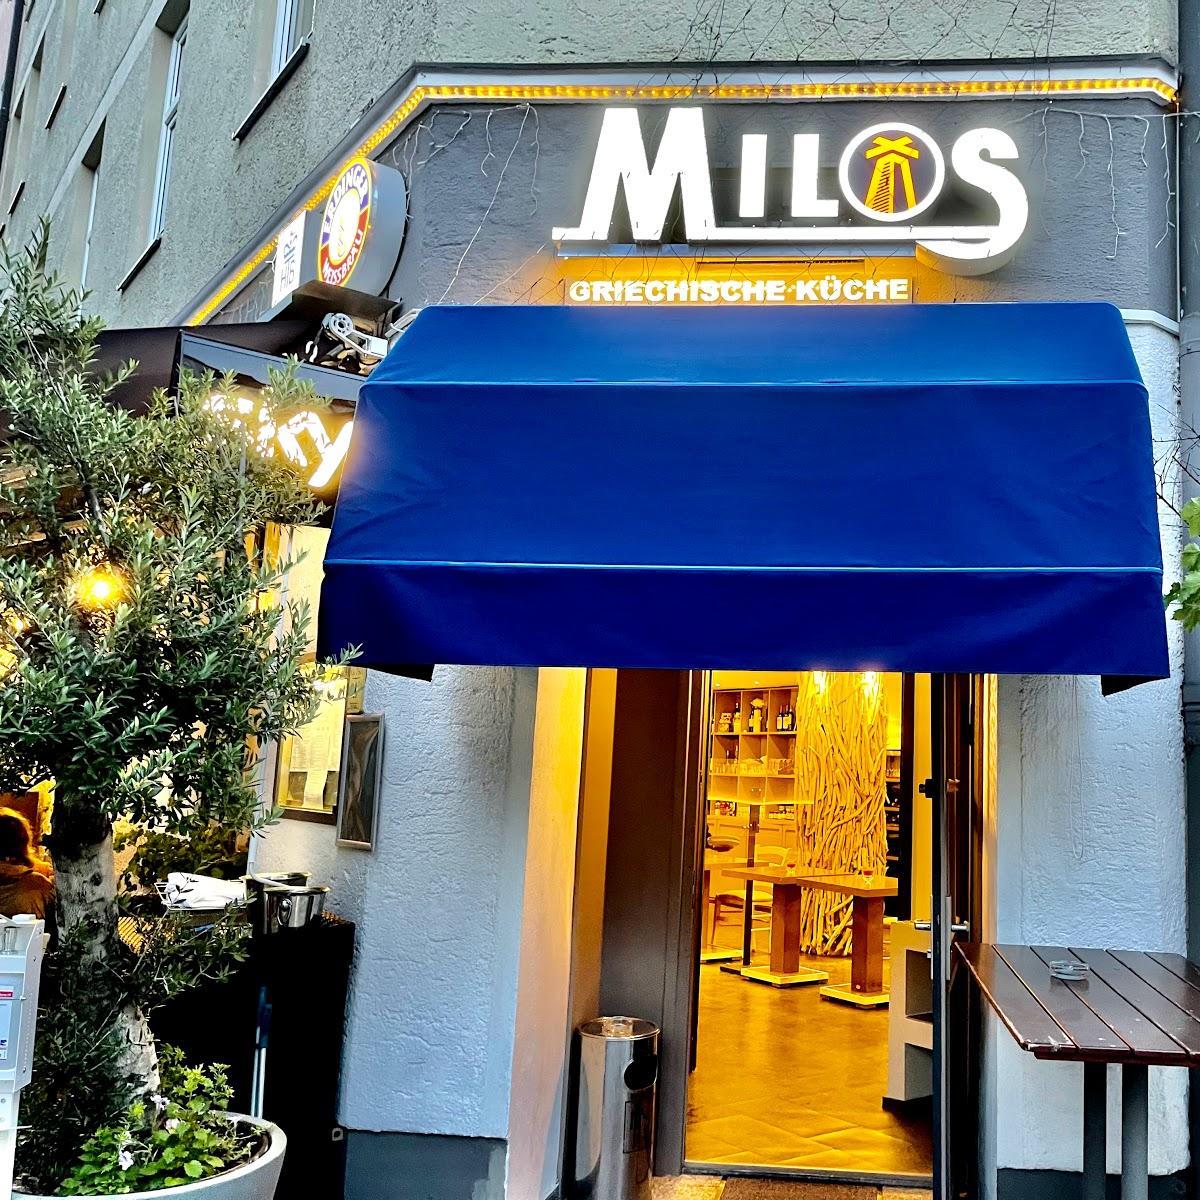 Restaurant "Milos" in München